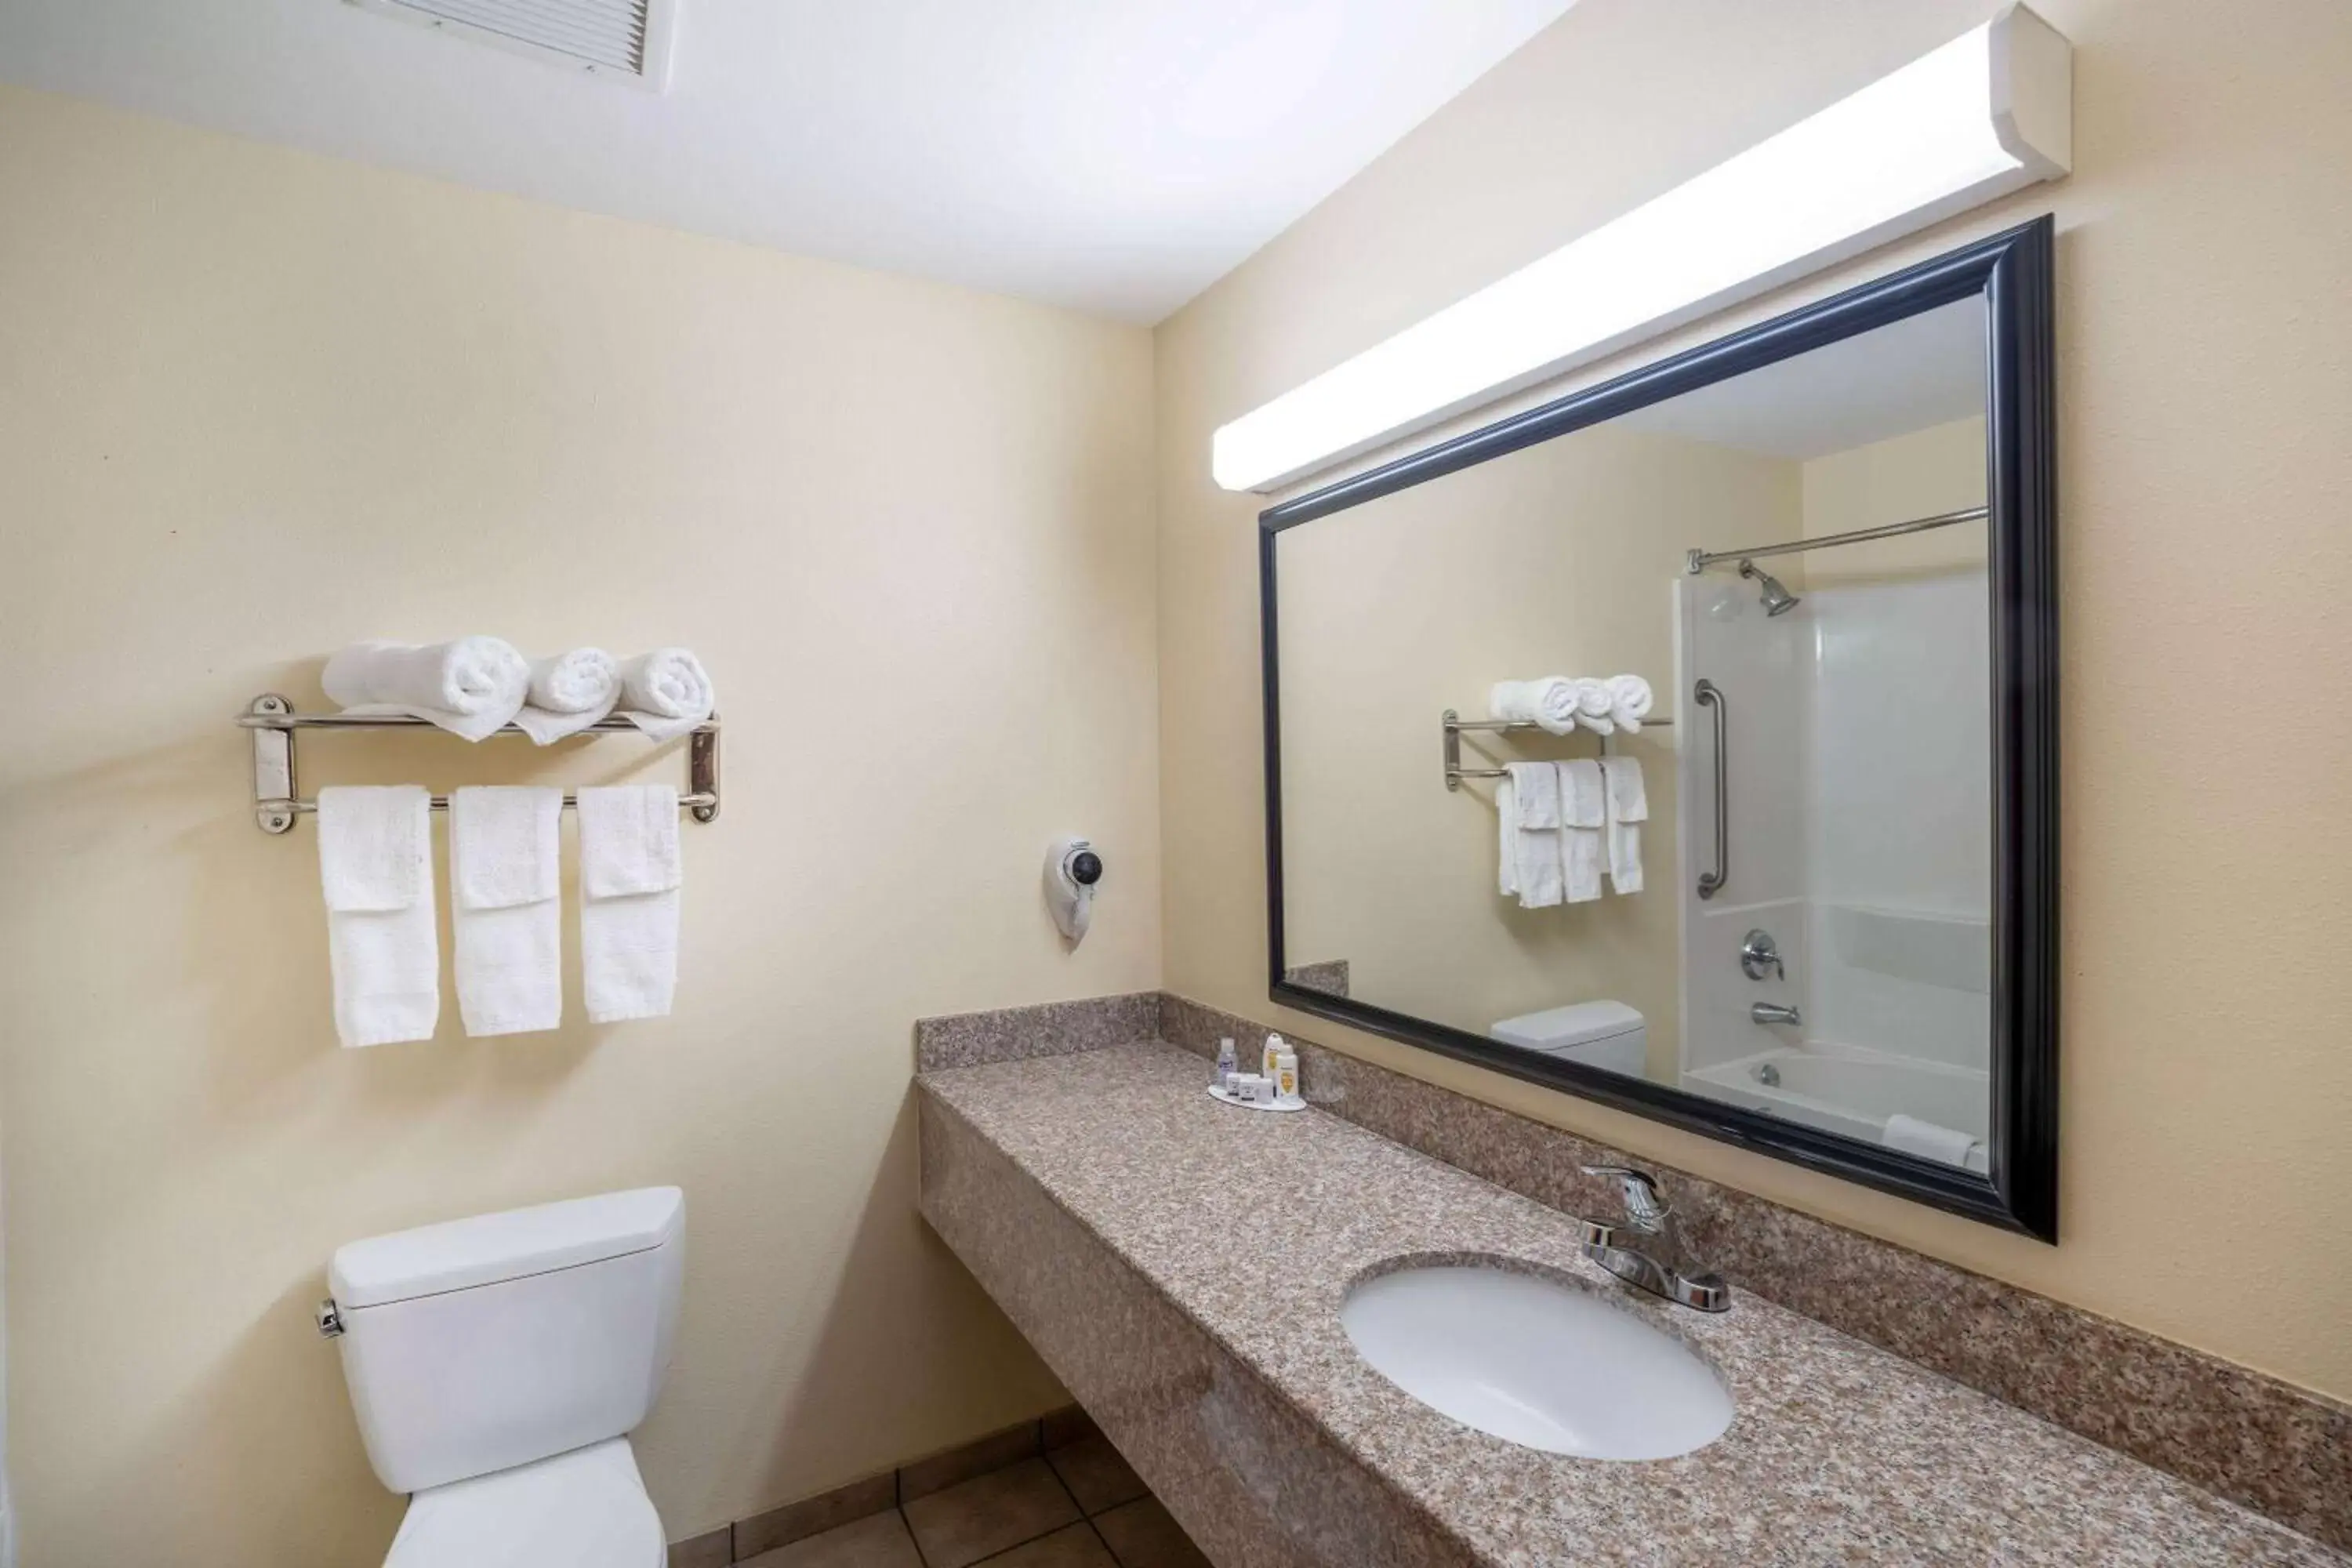 TV and multimedia, Bathroom in Baymont by Wyndham Savannah South